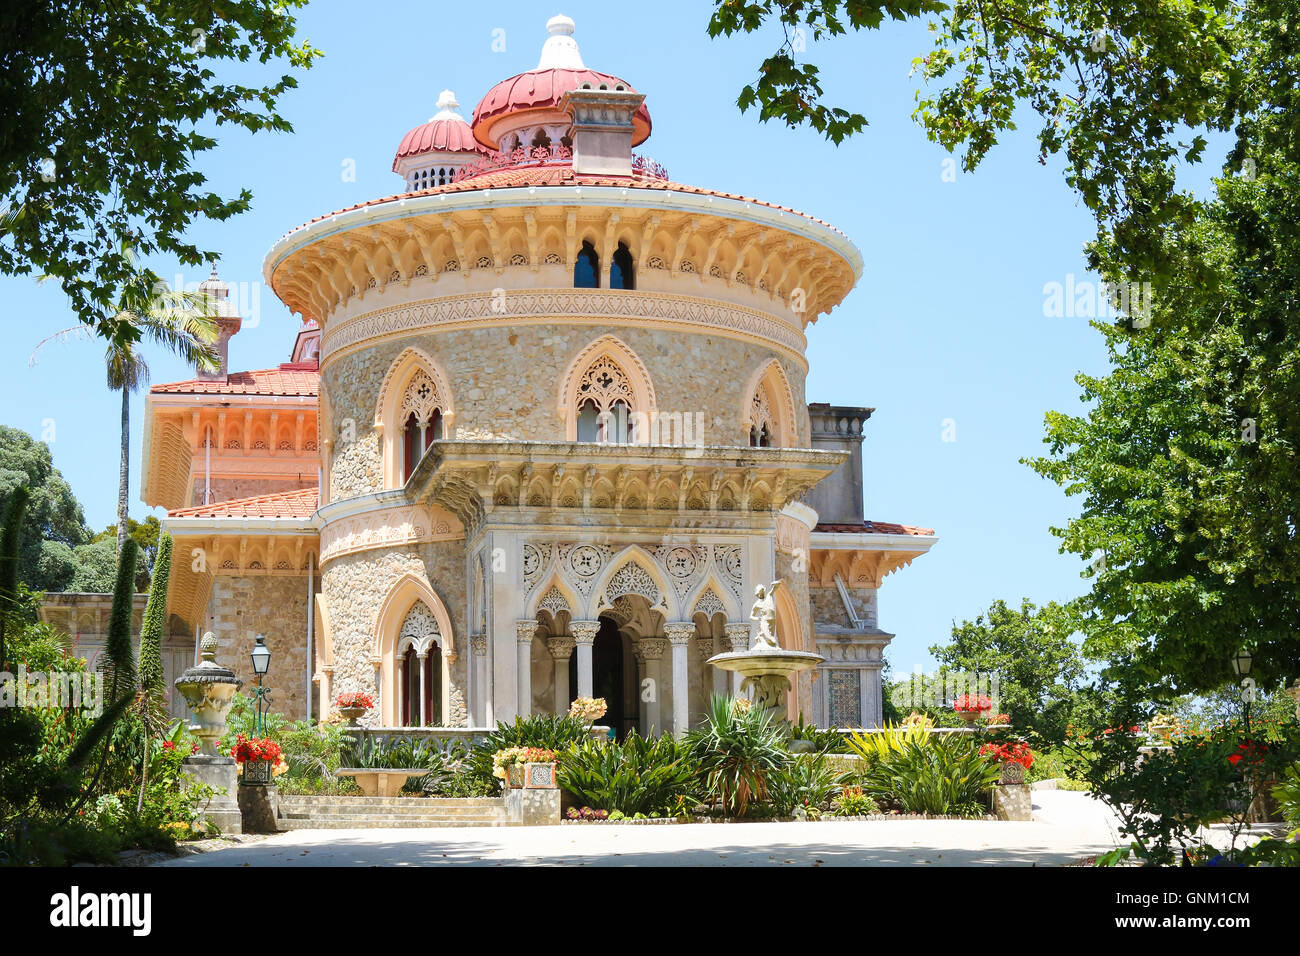 L'arabesque Palais Monseratte sur une colline près de la ville de Sintra, Lisbonne, Portugal Banque D'Images